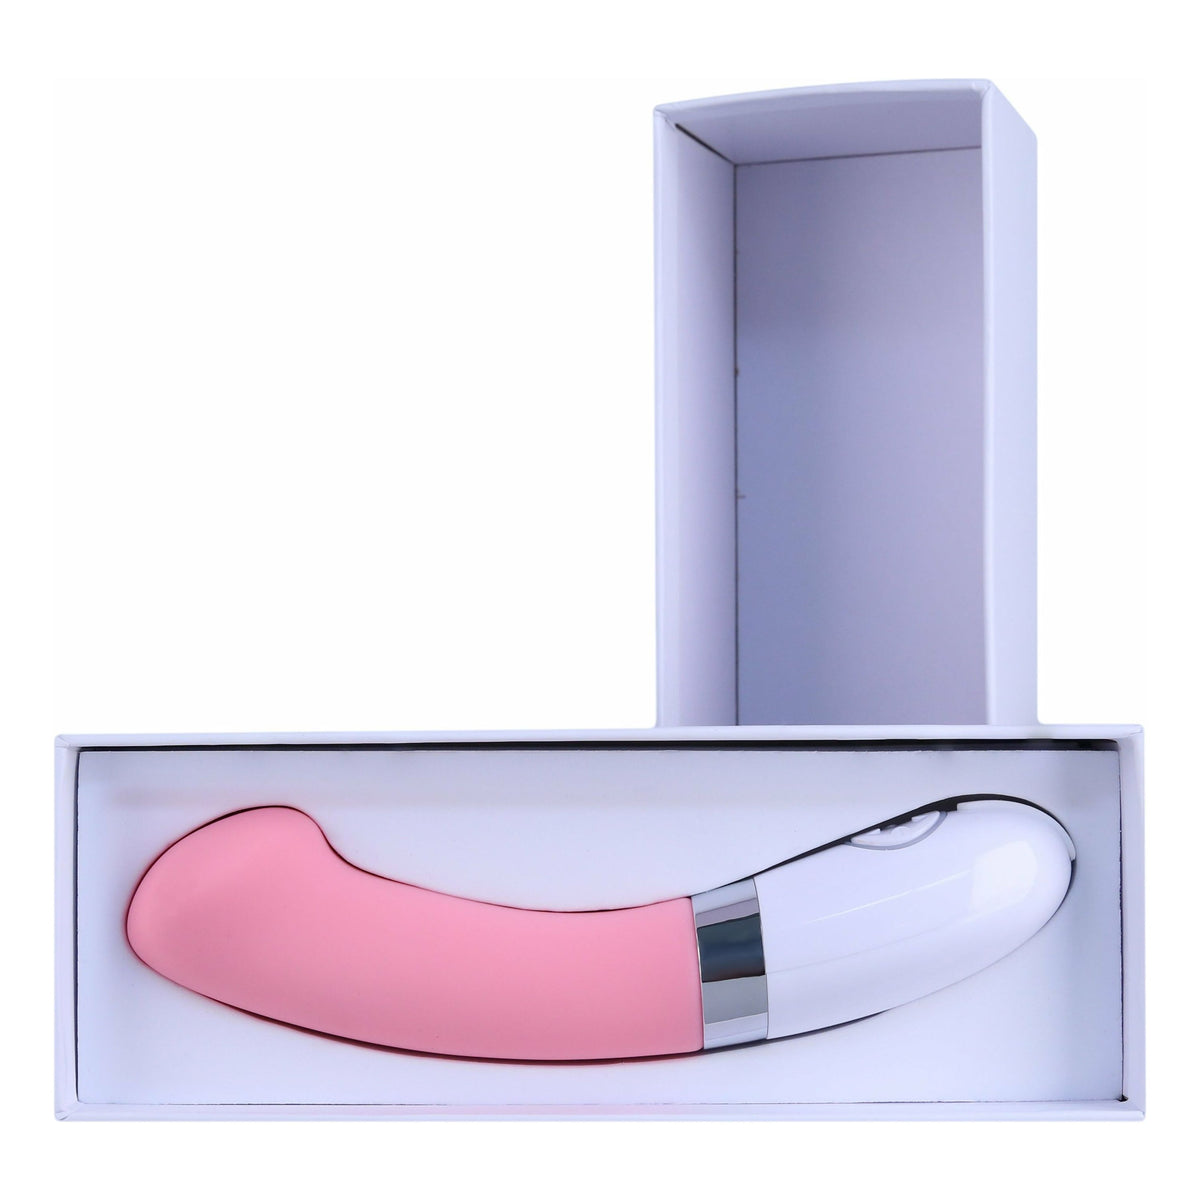 Bella Silicone G-Spot Vibrator - Pink